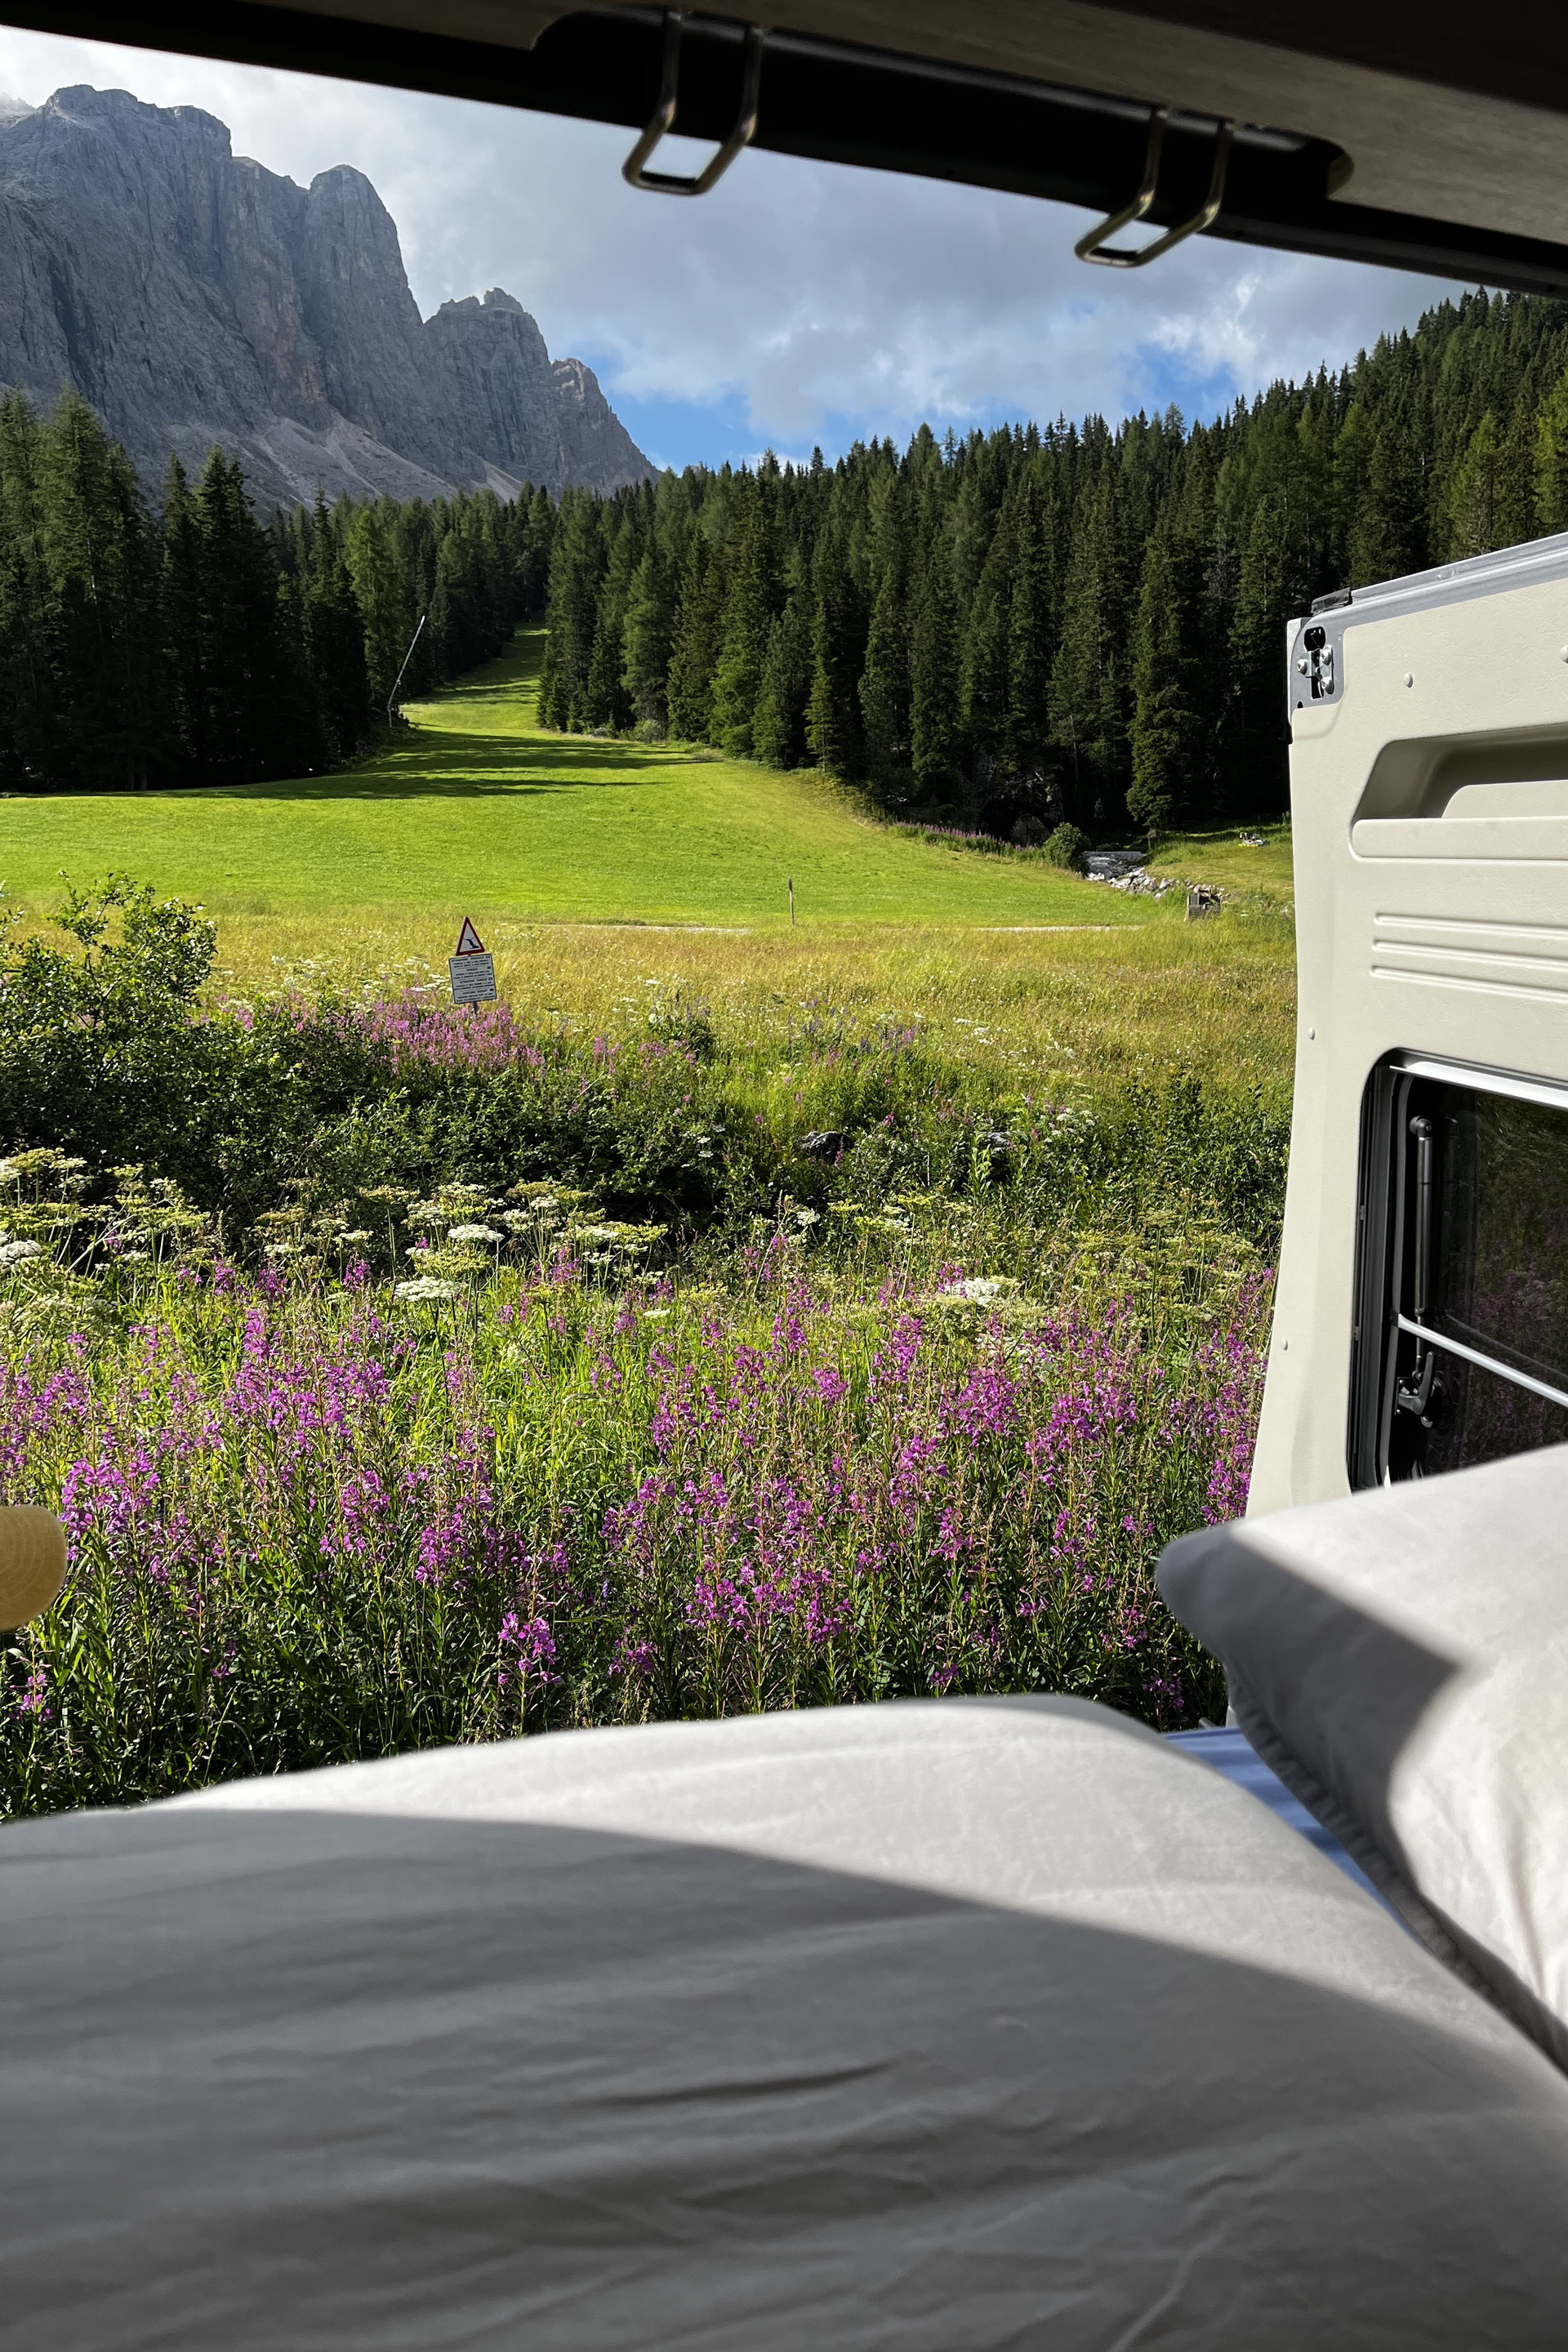 Vista des del llit de la furgoneta camper cap a les muntanyes